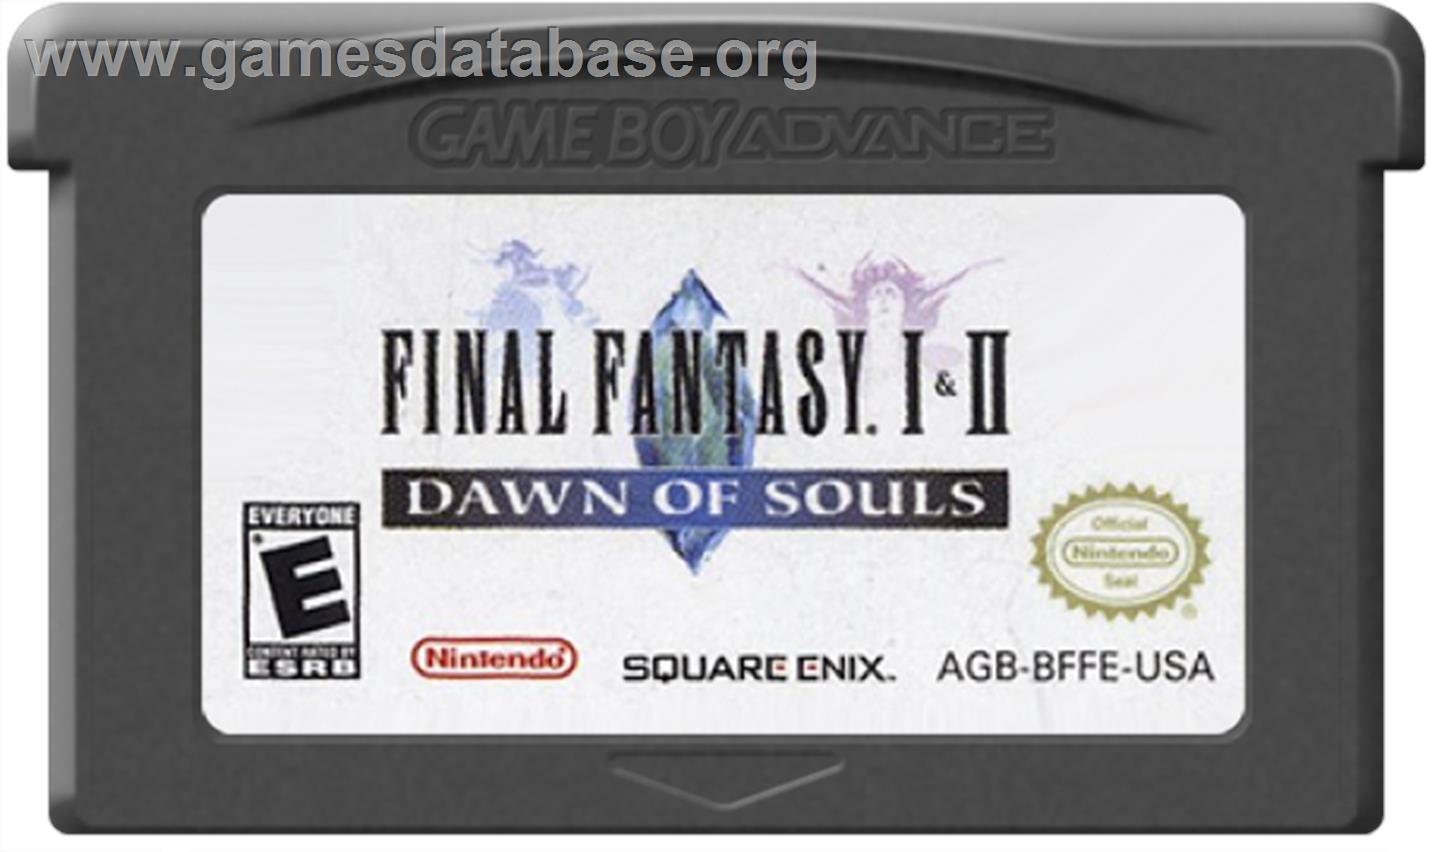 Final Fantasy 1 & 2: Dawn of Souls - Nintendo Game Boy Advance - Artwork - Cartridge